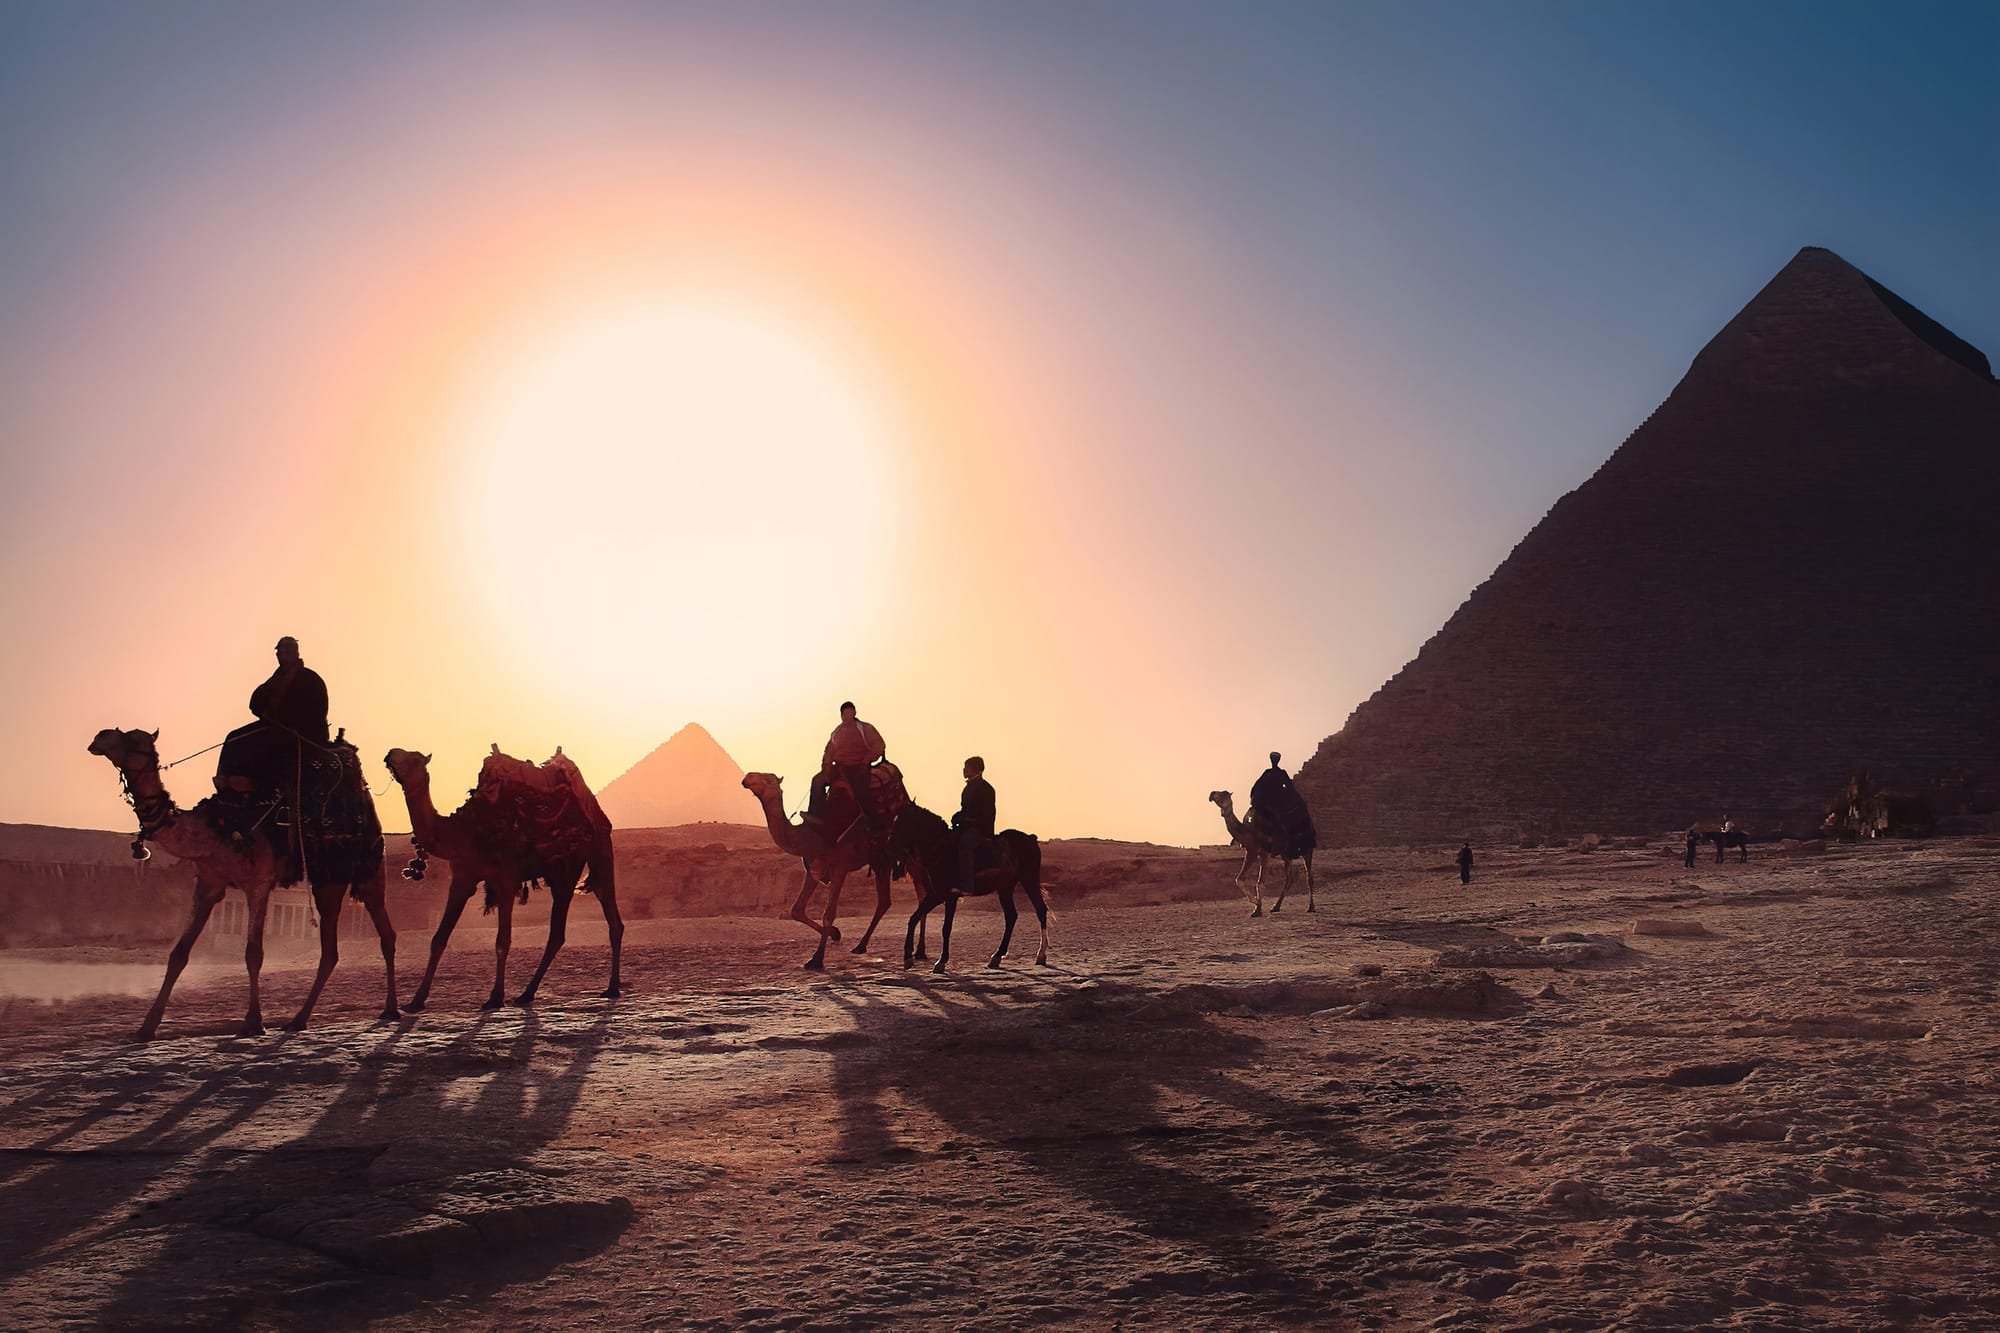 שנות שעבוד ישראל במצרים וגאולתו